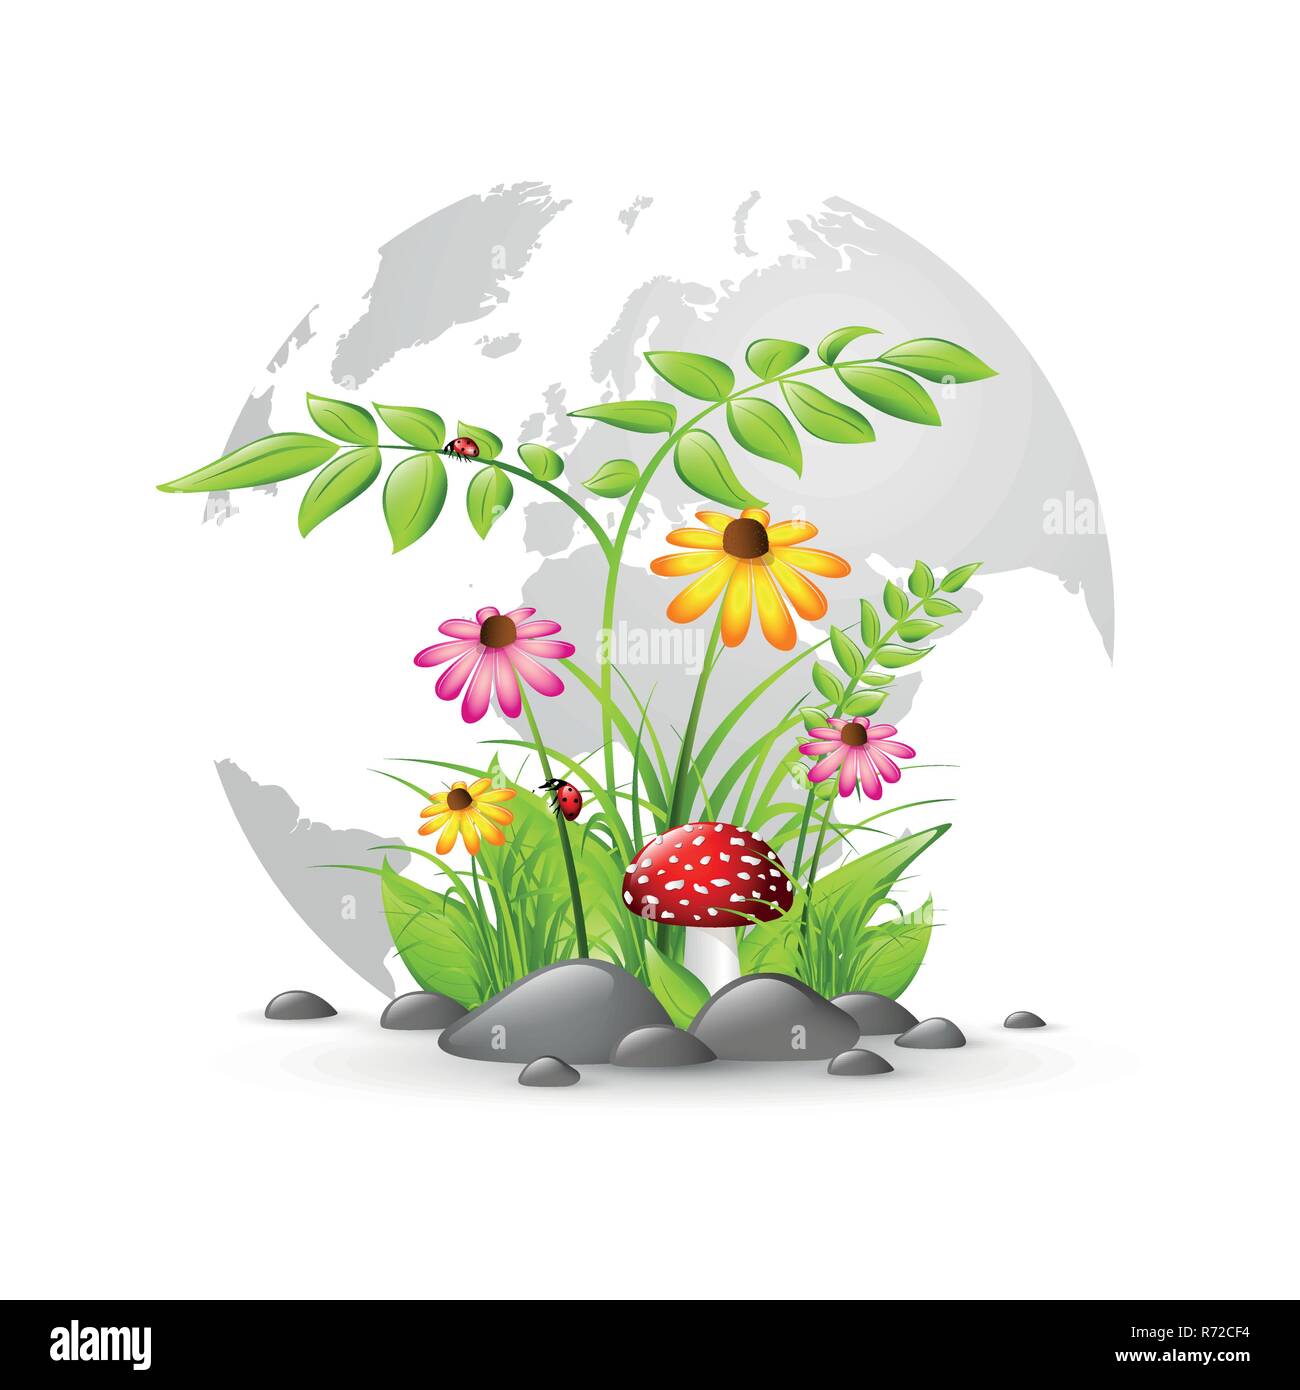 Natur und Pflanzen auf der Erde mit bunten Blumen Vektor-illustration EPS 10. Stock Vektor